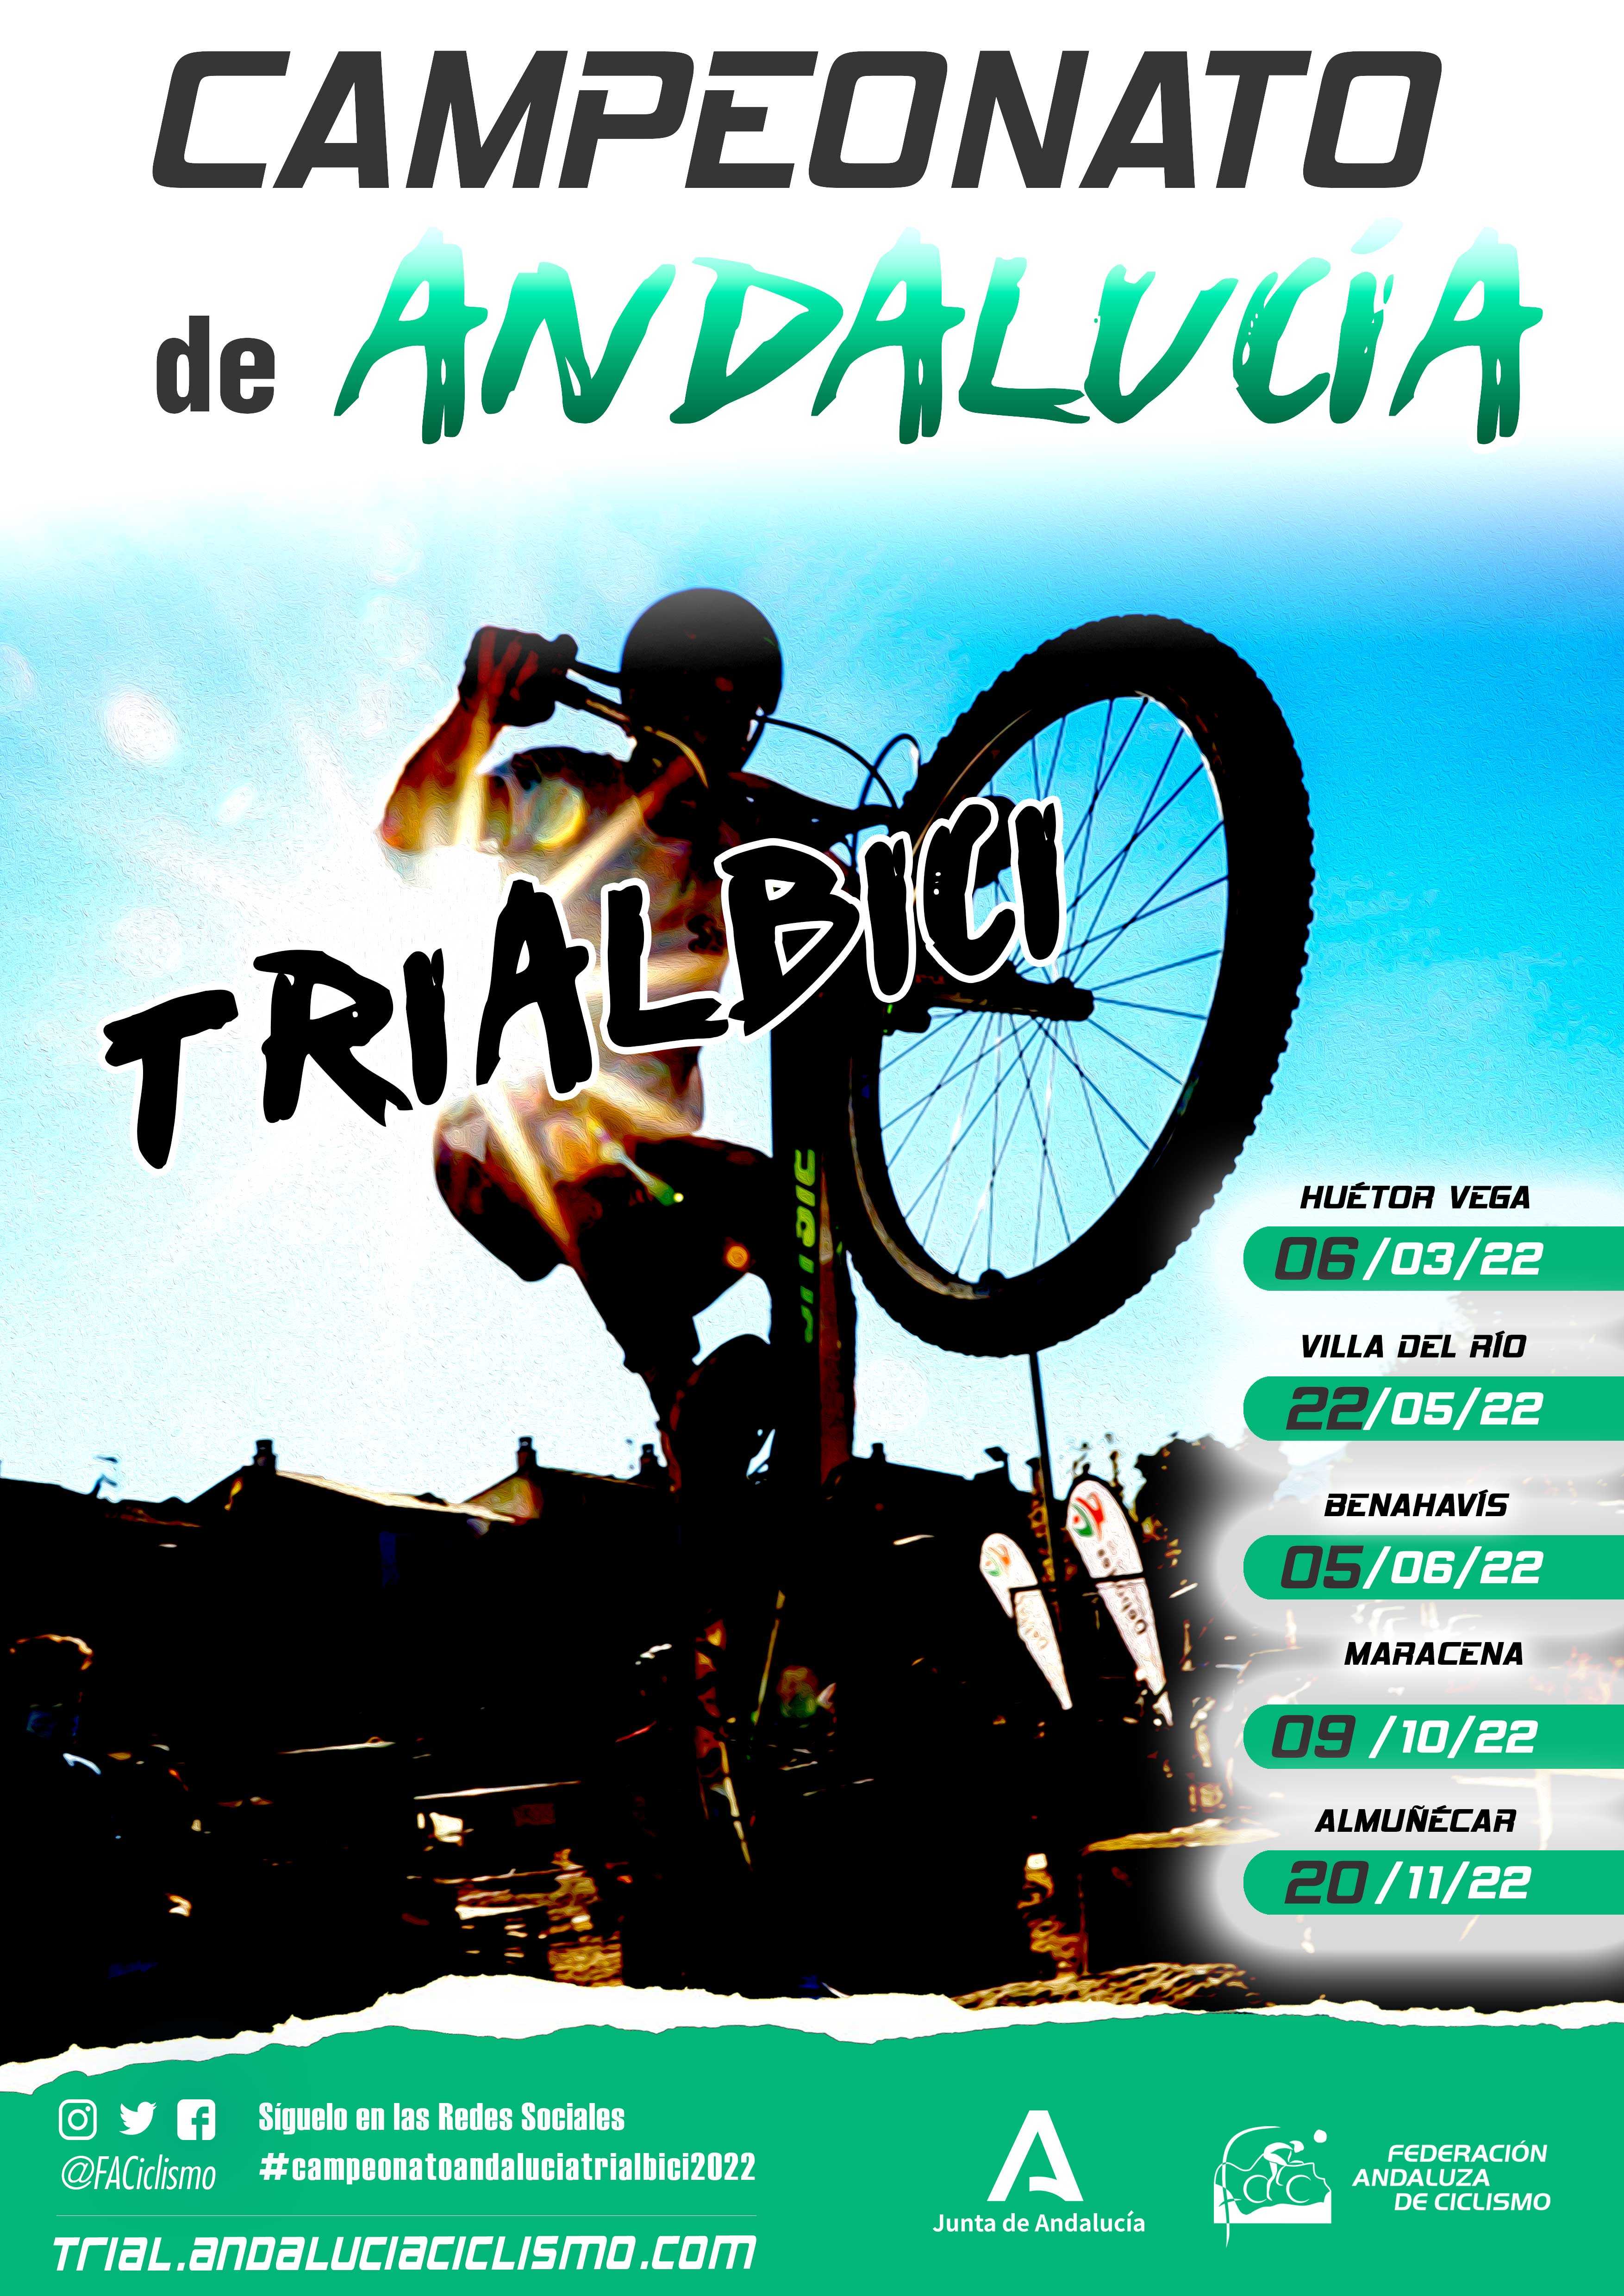 Fechas del Campeonato Andalucía Trialbici 2022